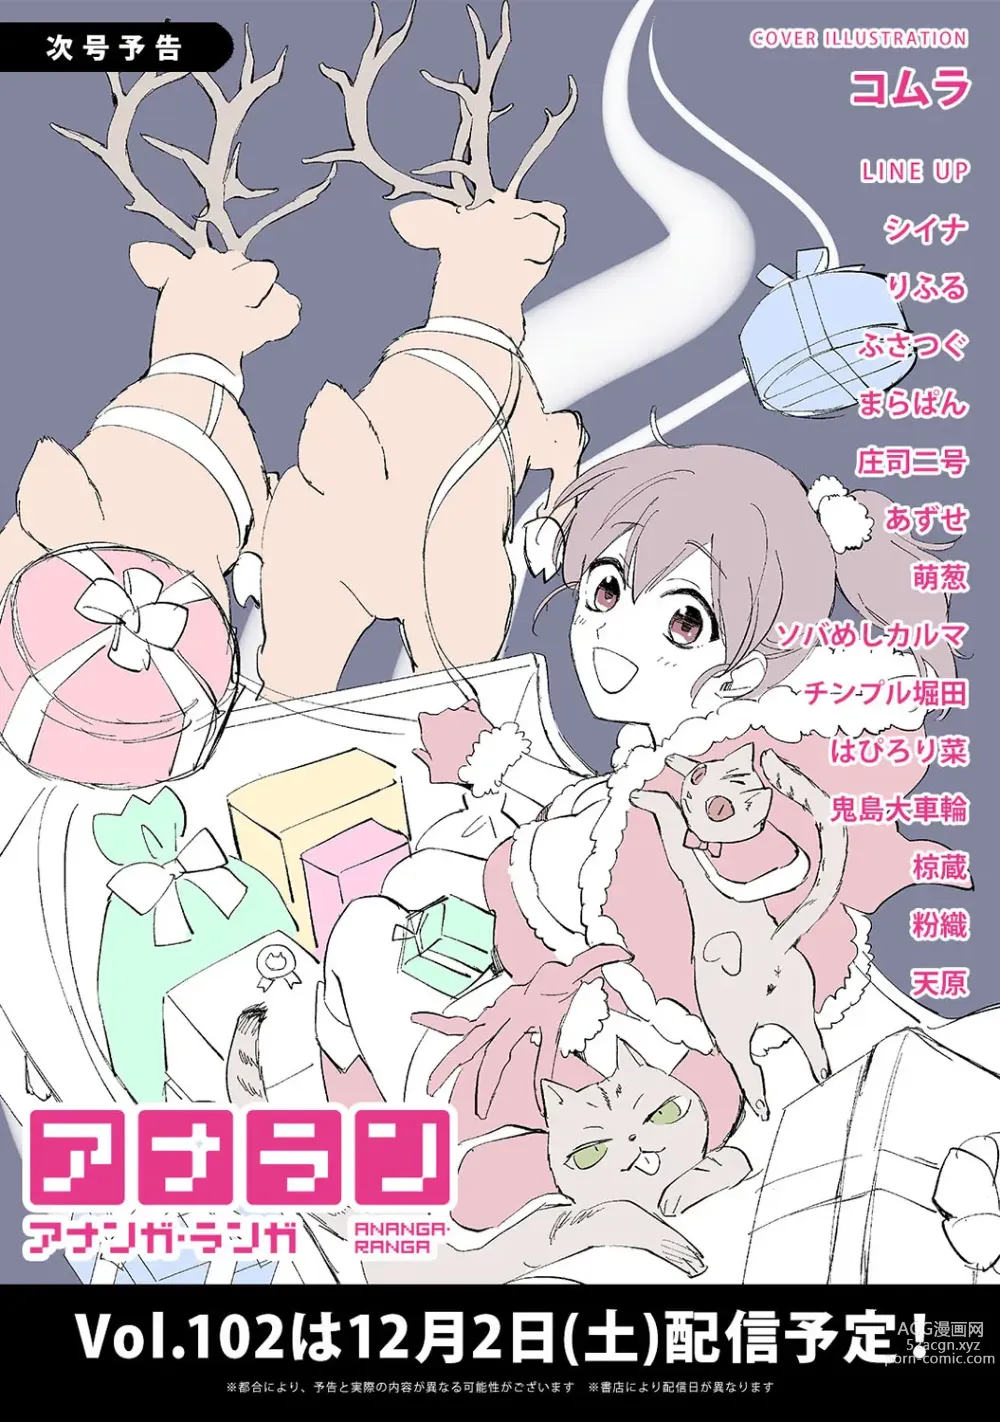 Page 374 of manga COMIC Ananga Ranga Vol. 101